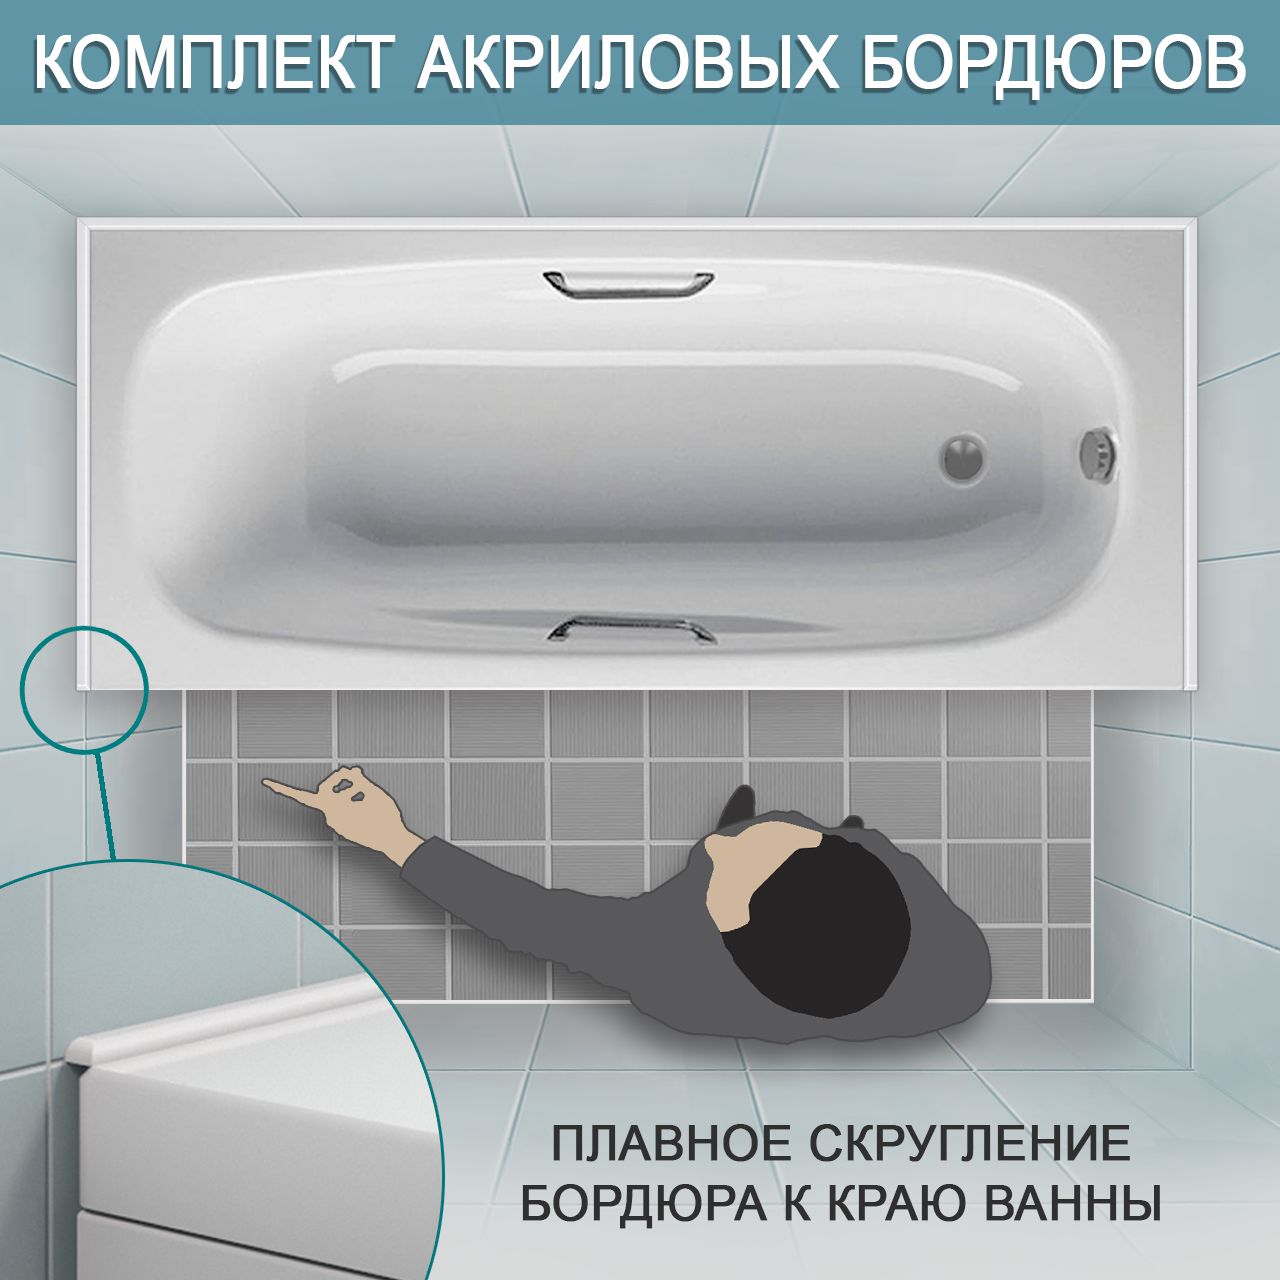 Комплект акриловых бордюров для ванной (3 шт) СВ12 интернет-магазин BNV